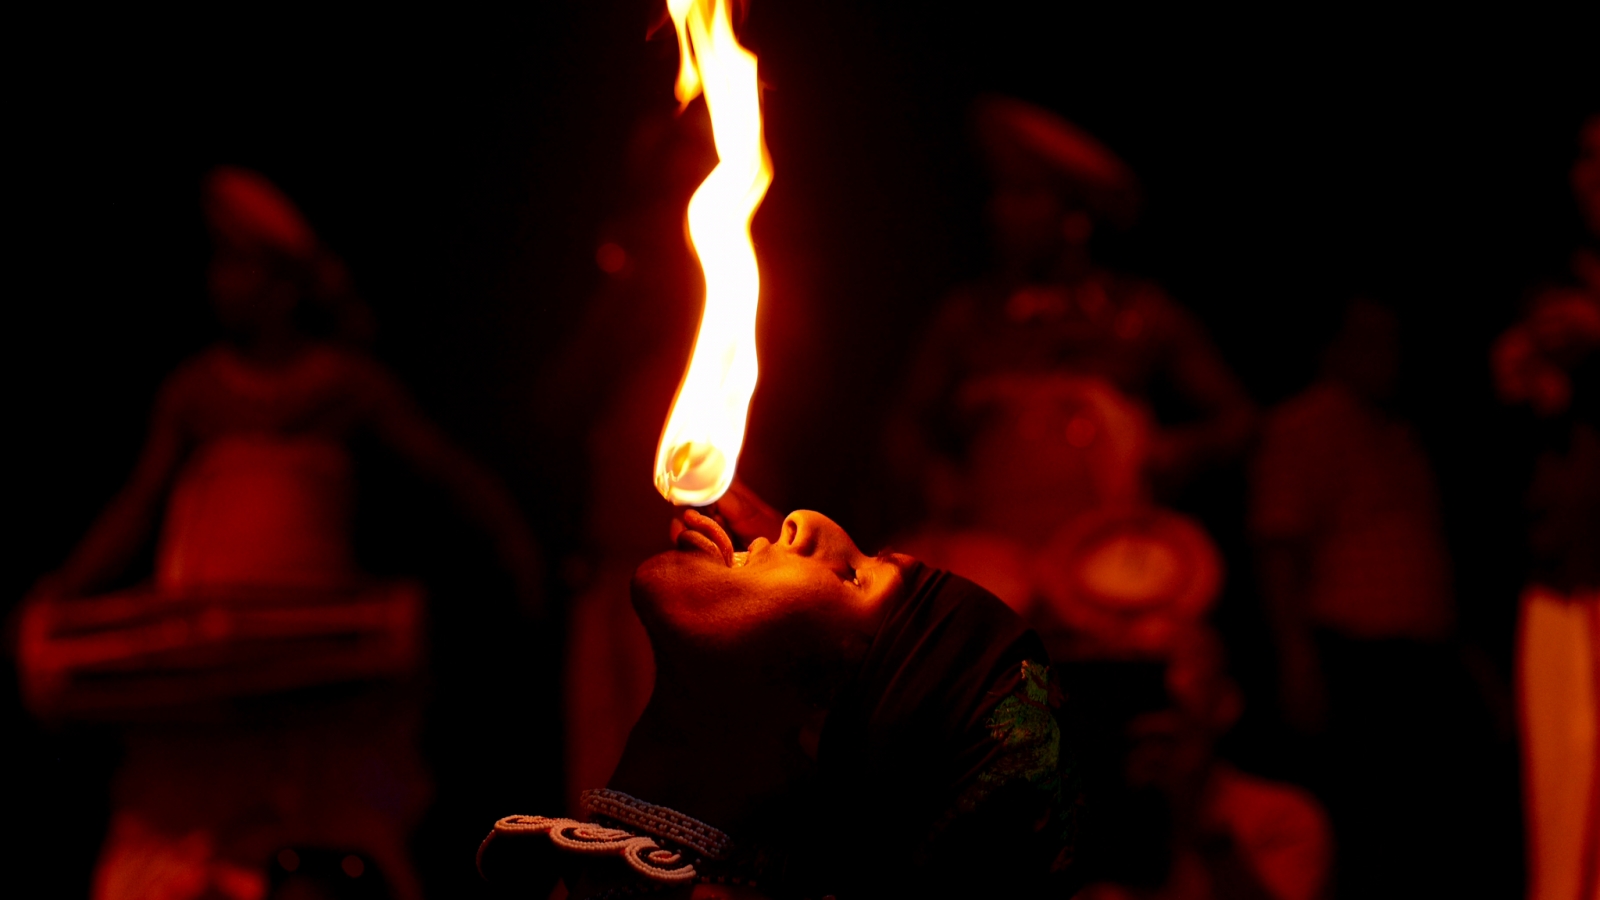 Fire Eating Sri Lanka Kandayan Dancer 2015 Sarah Matler Photogra